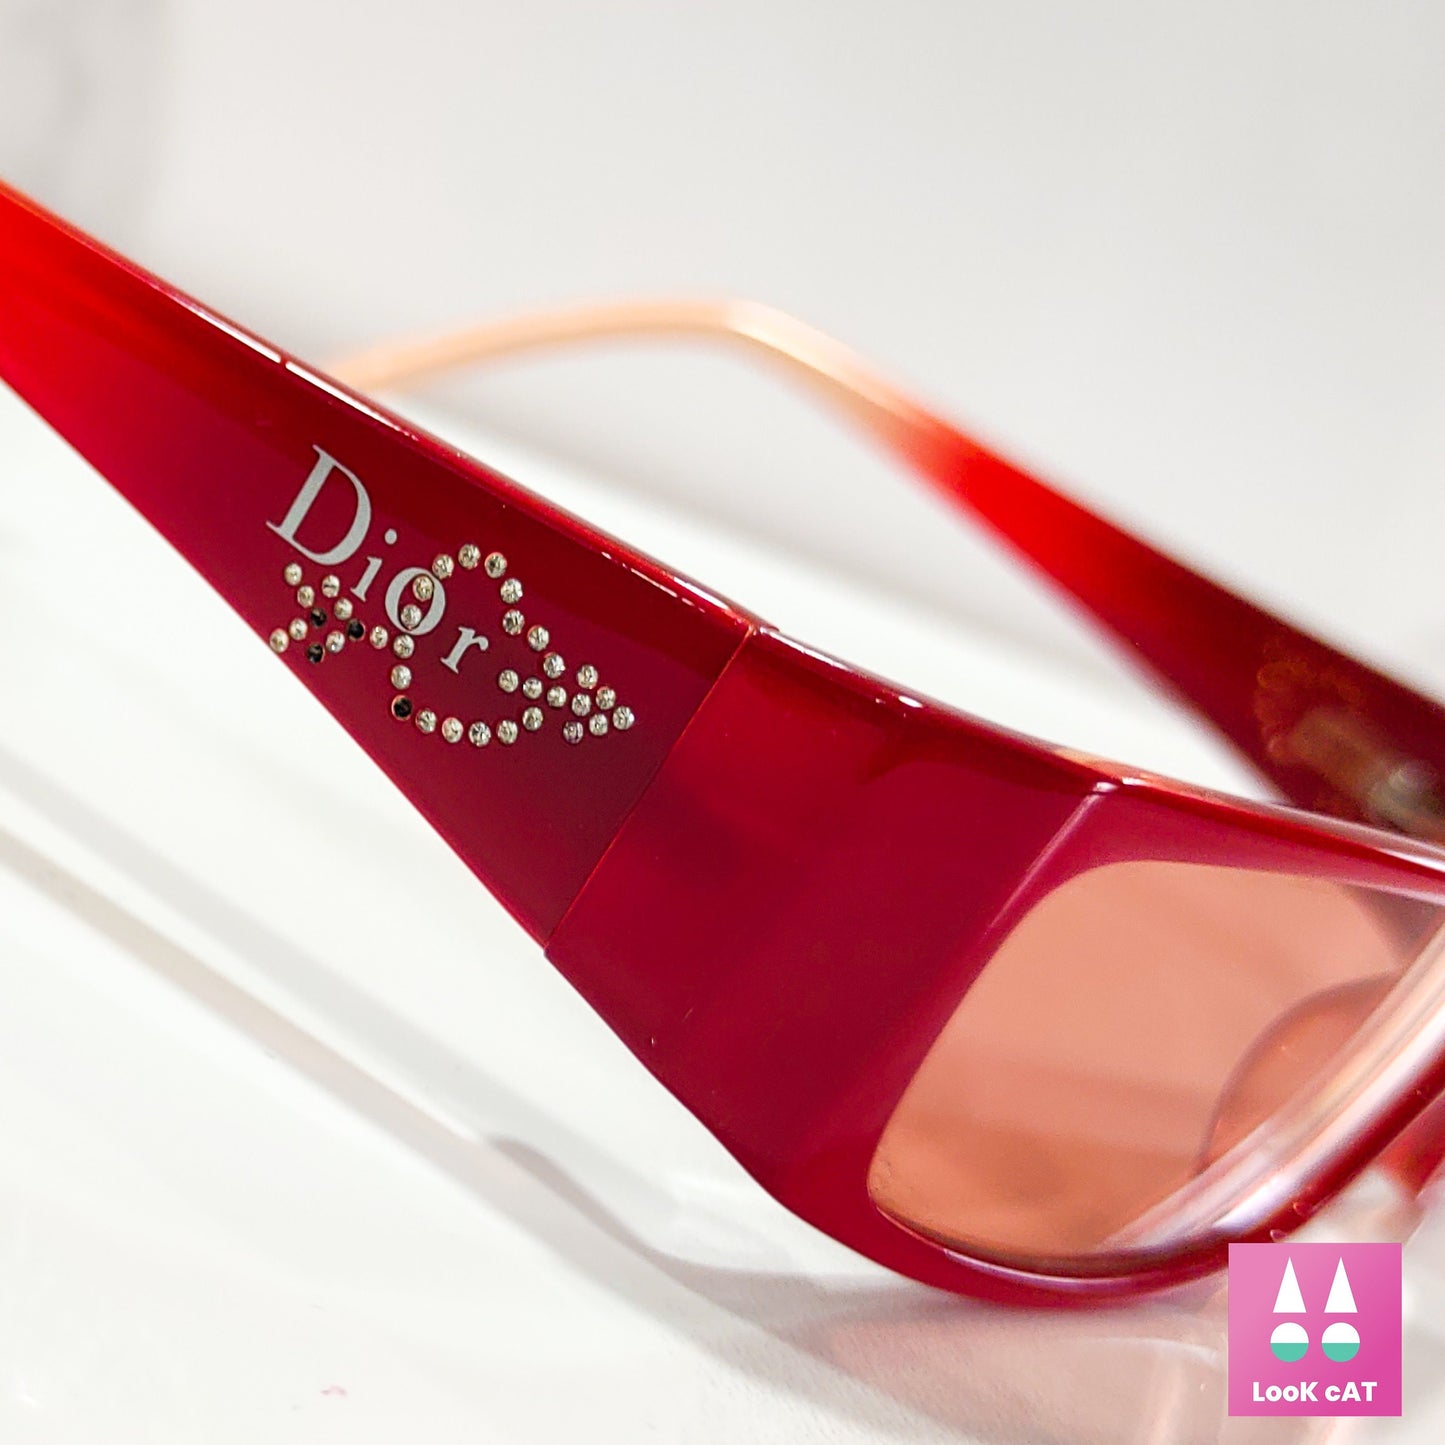 Christian Dior 3088 Heart occhiali da sole vintage occhiali gafas Y2k